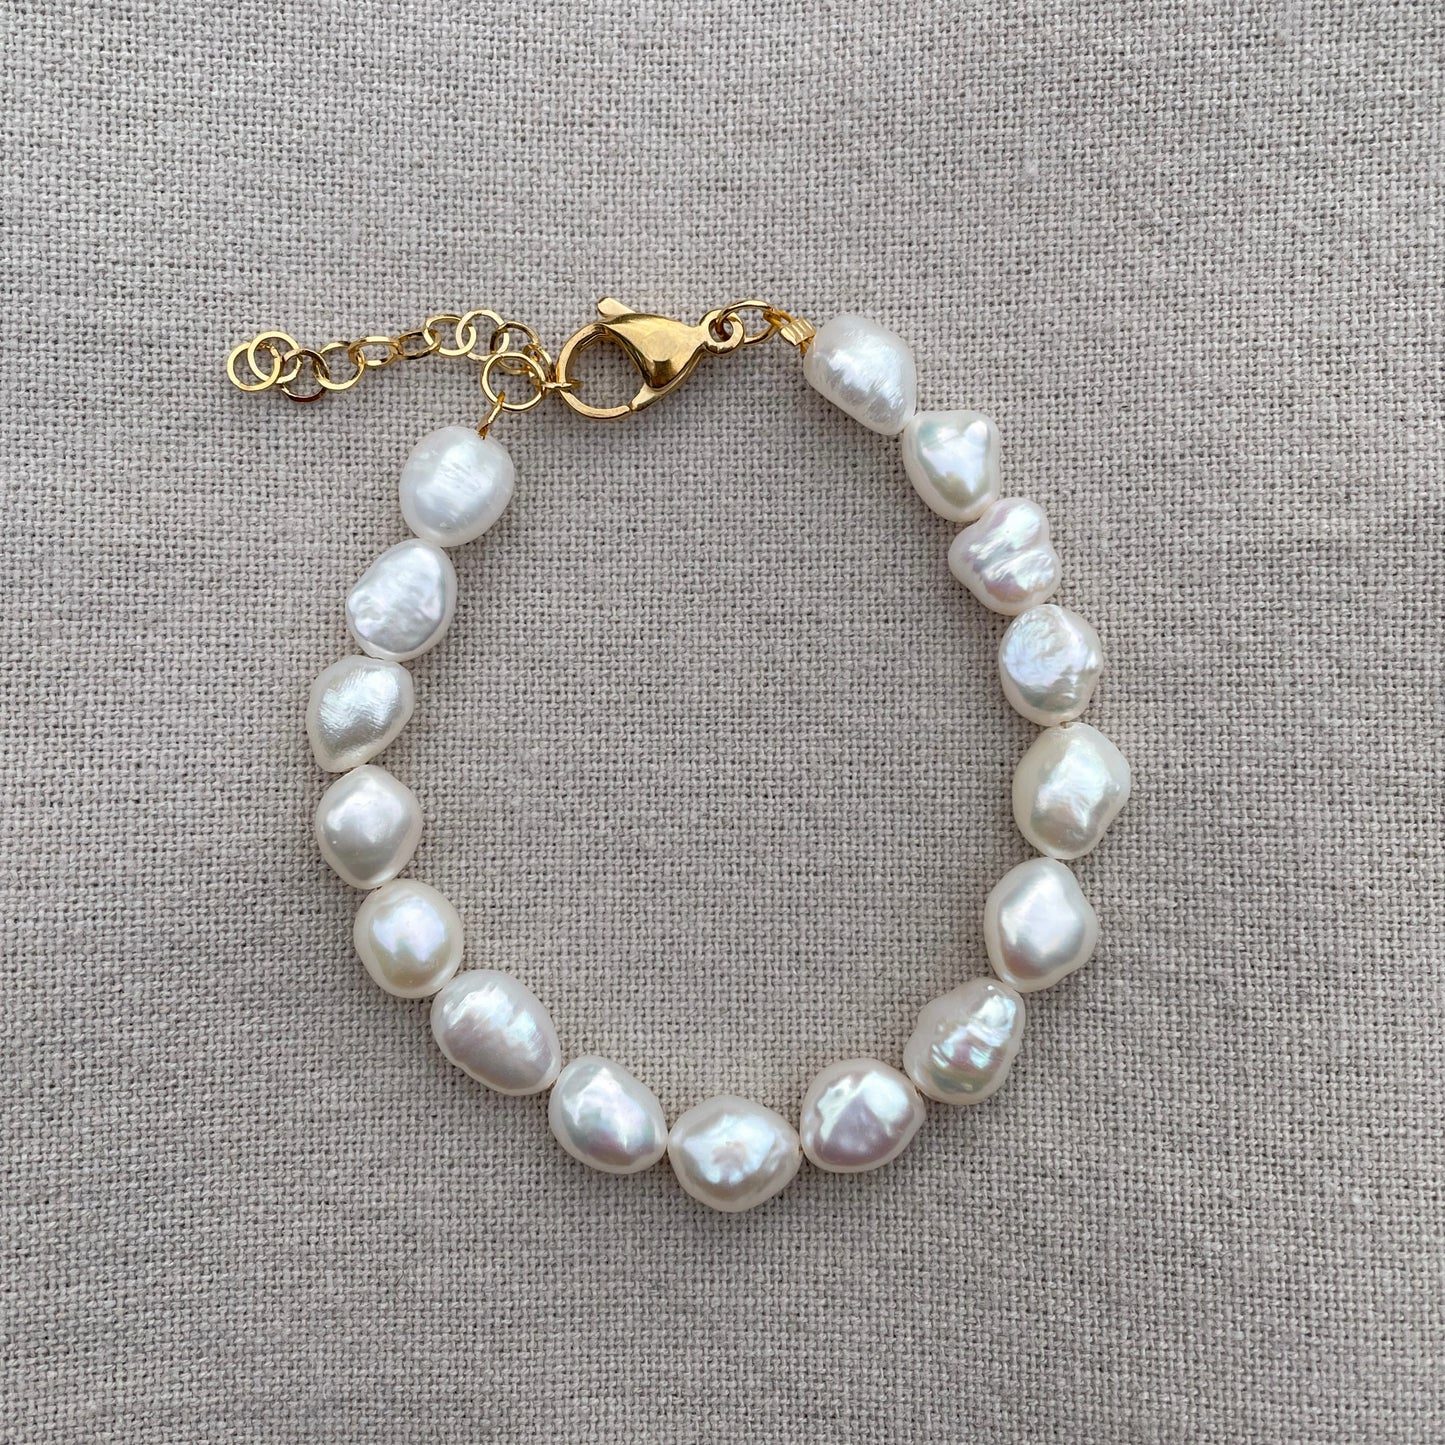 White baroque pearl bracelet